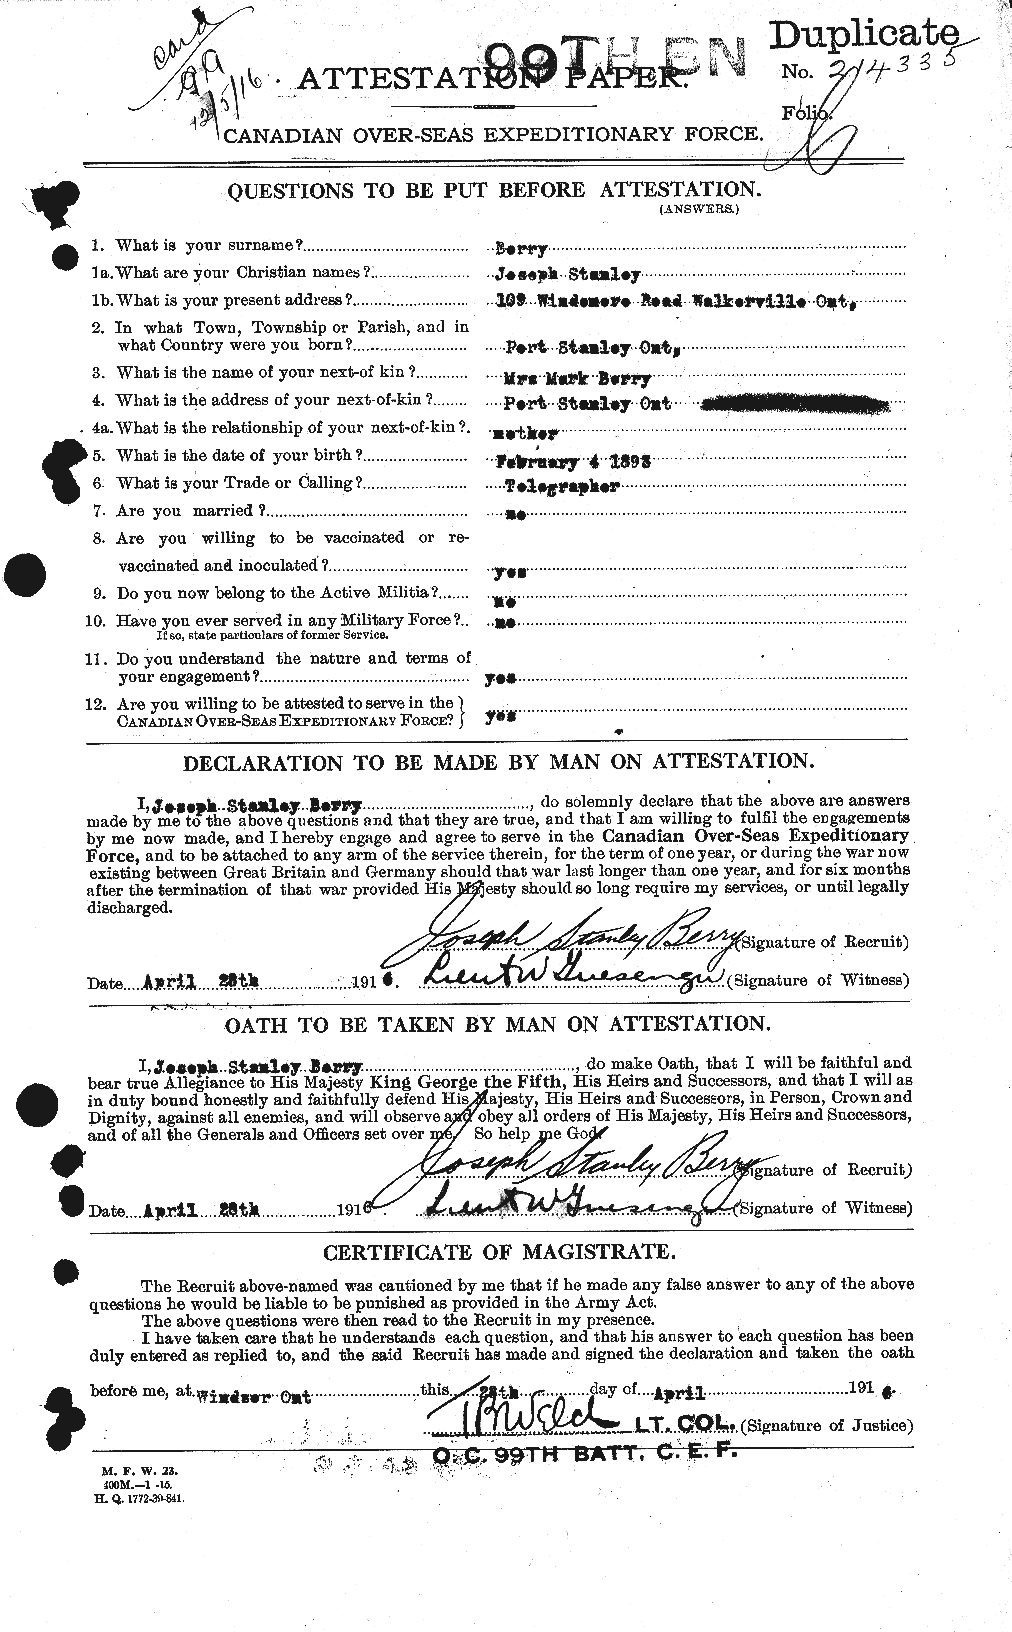 Dossiers du Personnel de la Première Guerre mondiale - CEC 240994a